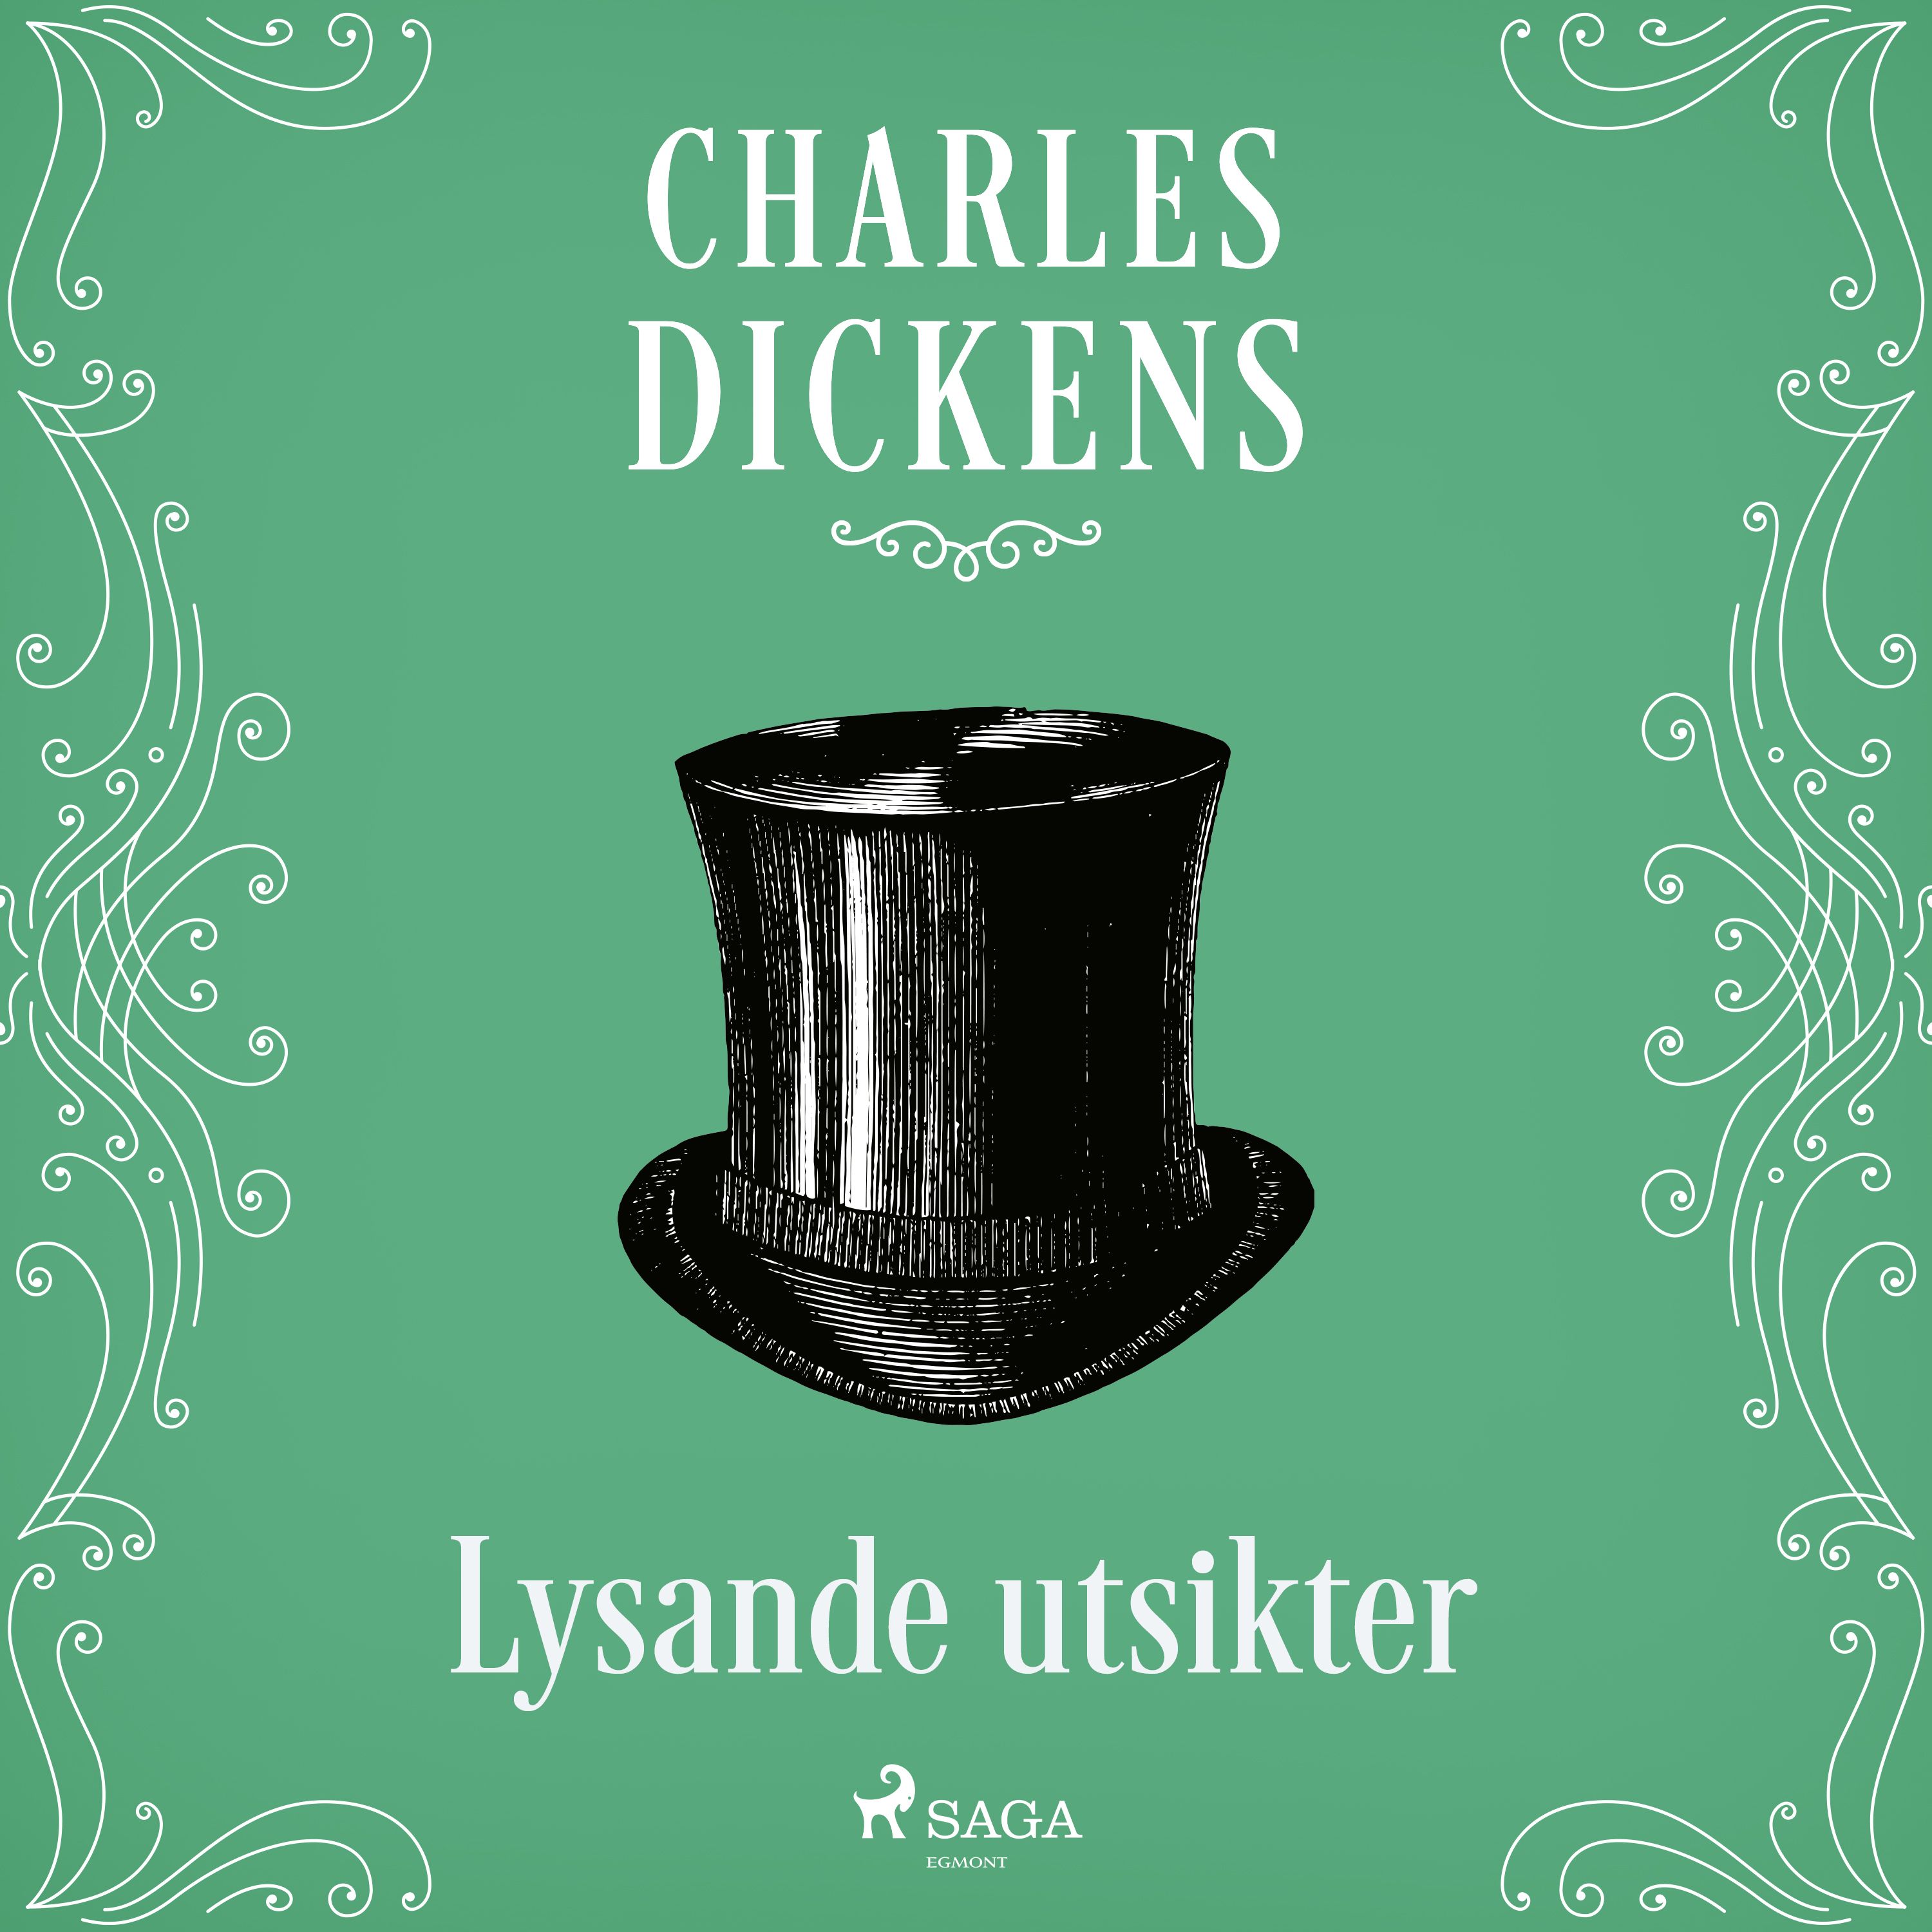 Lysande utsikter, audiobook by Charles Dickens